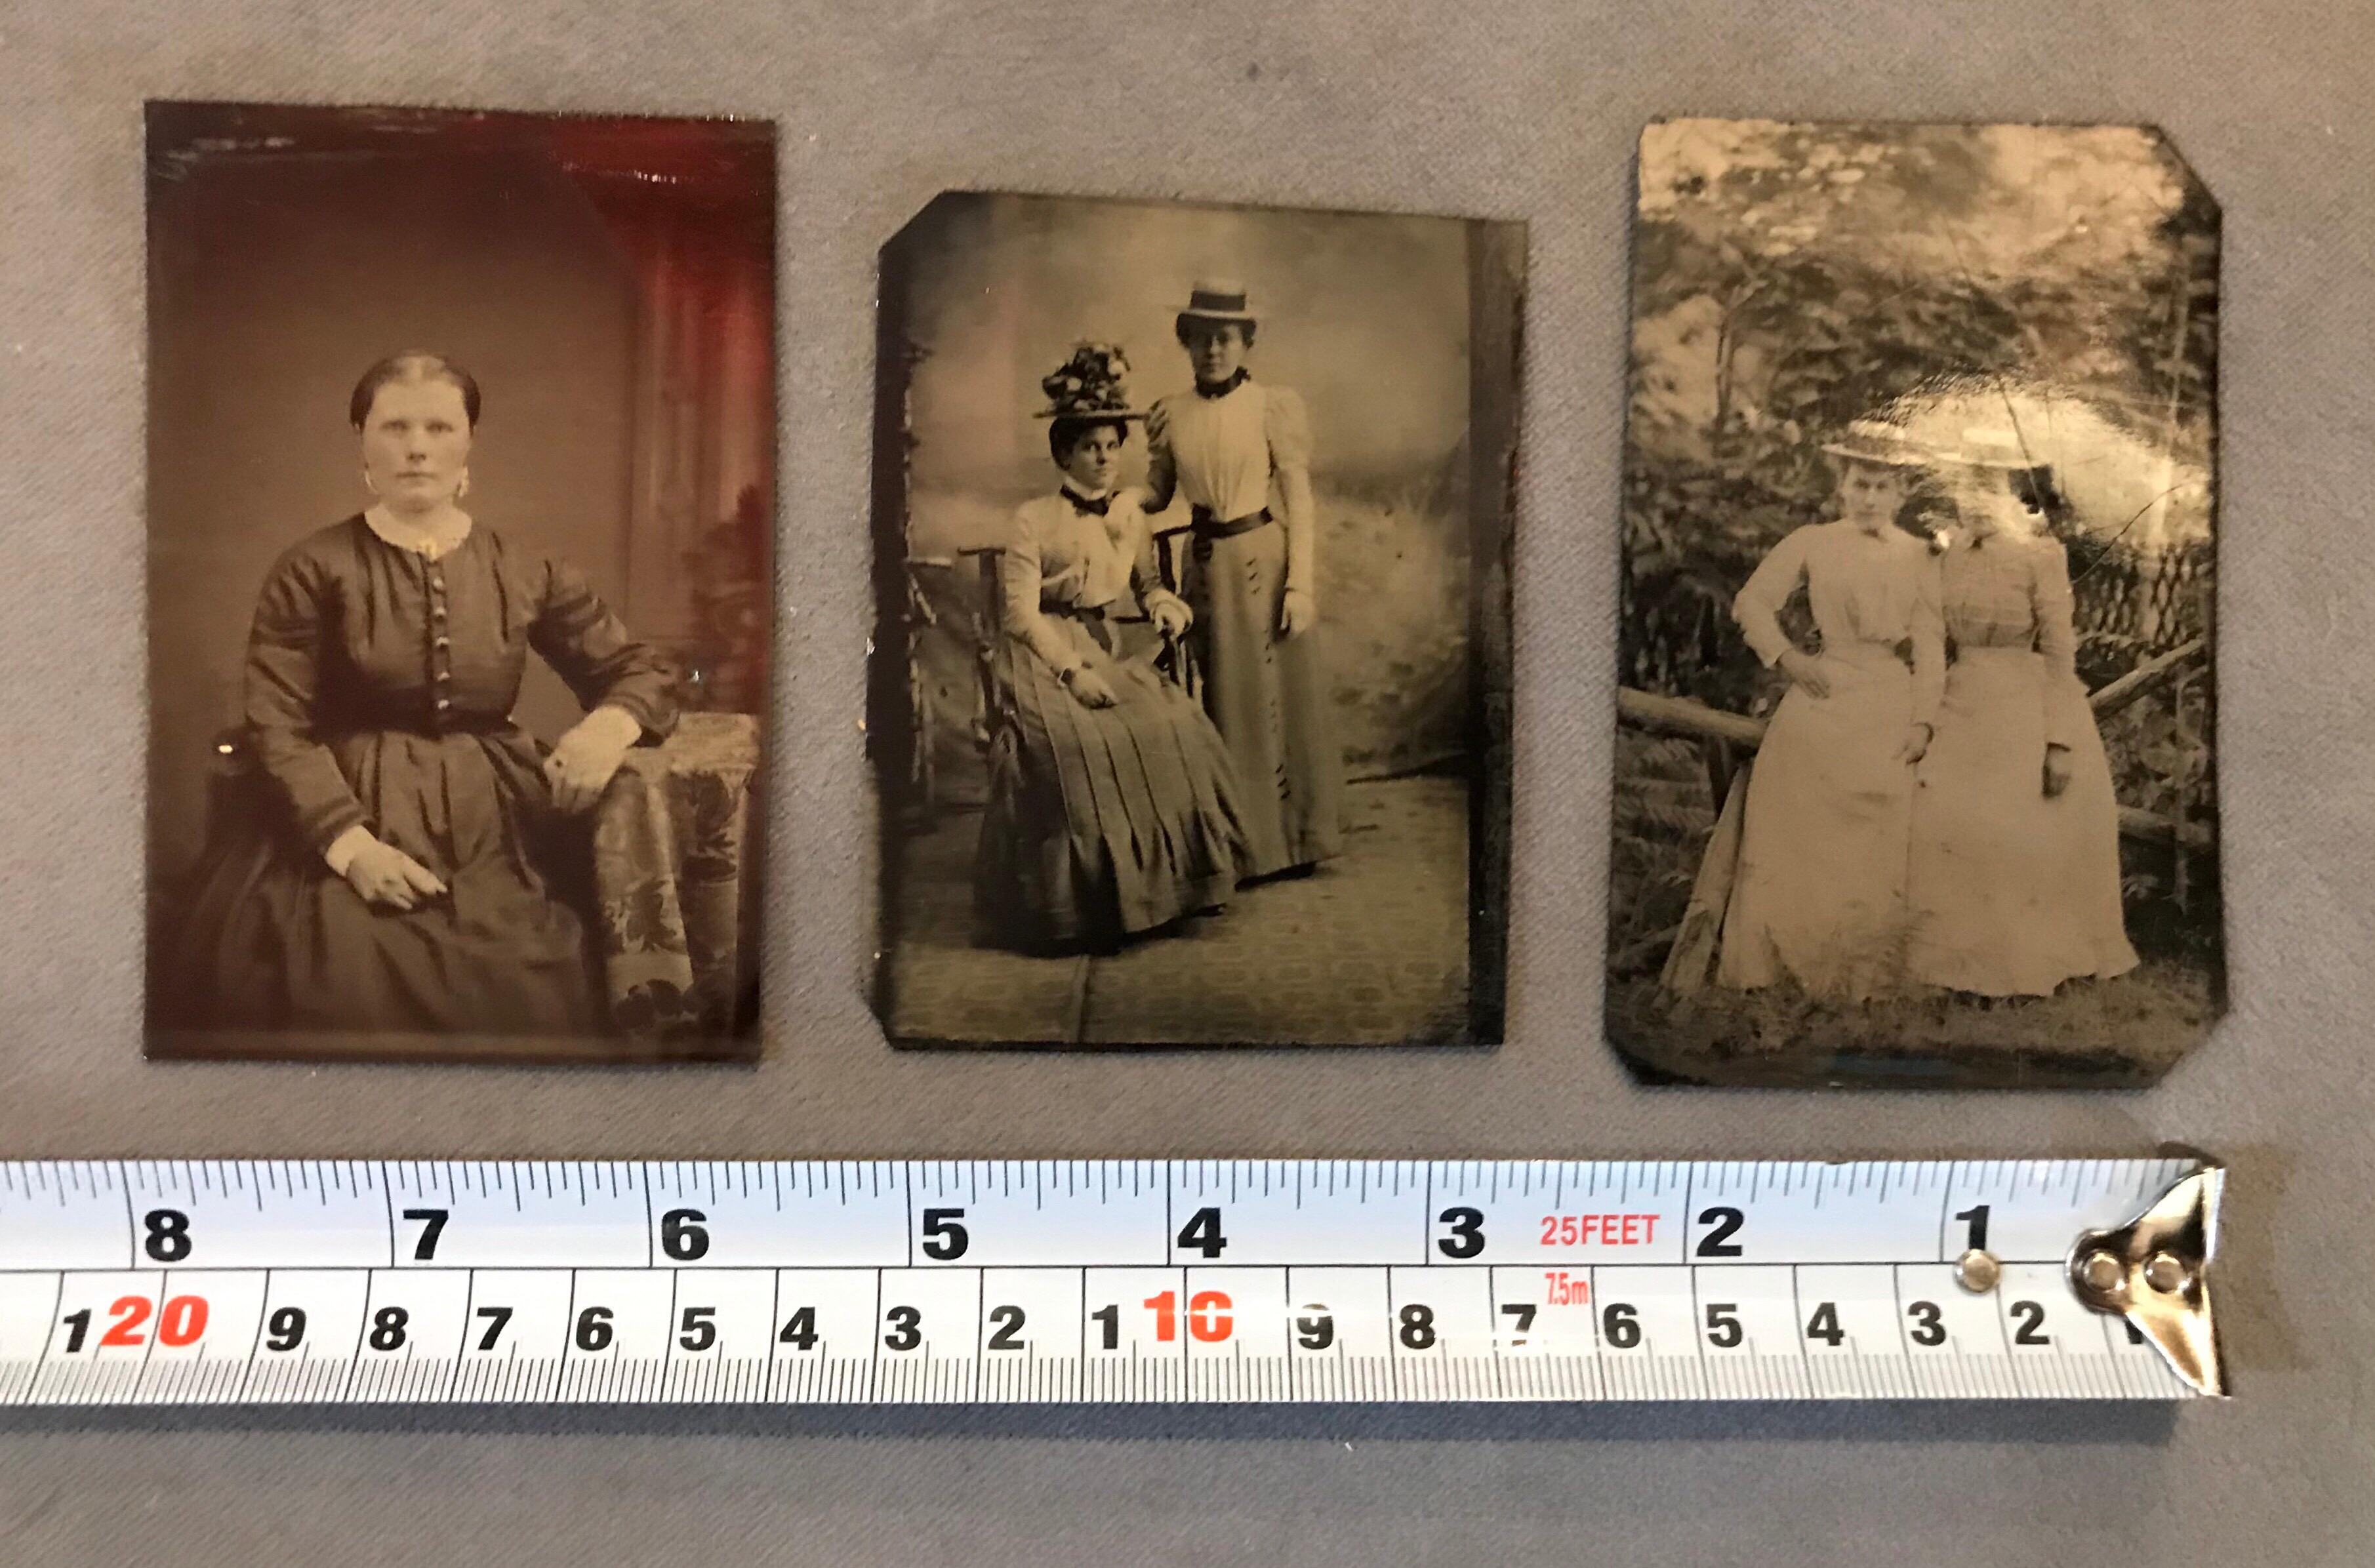 Ensemble de trois tintypes anciens de femmes. Le prix est pour les 3 comme un ensemble. 
Un ferrotype est une photographie réalisée en créant un positif direct sur une fine feuille de métal recouverte d'une laque ou d'un émail foncé et utilisée